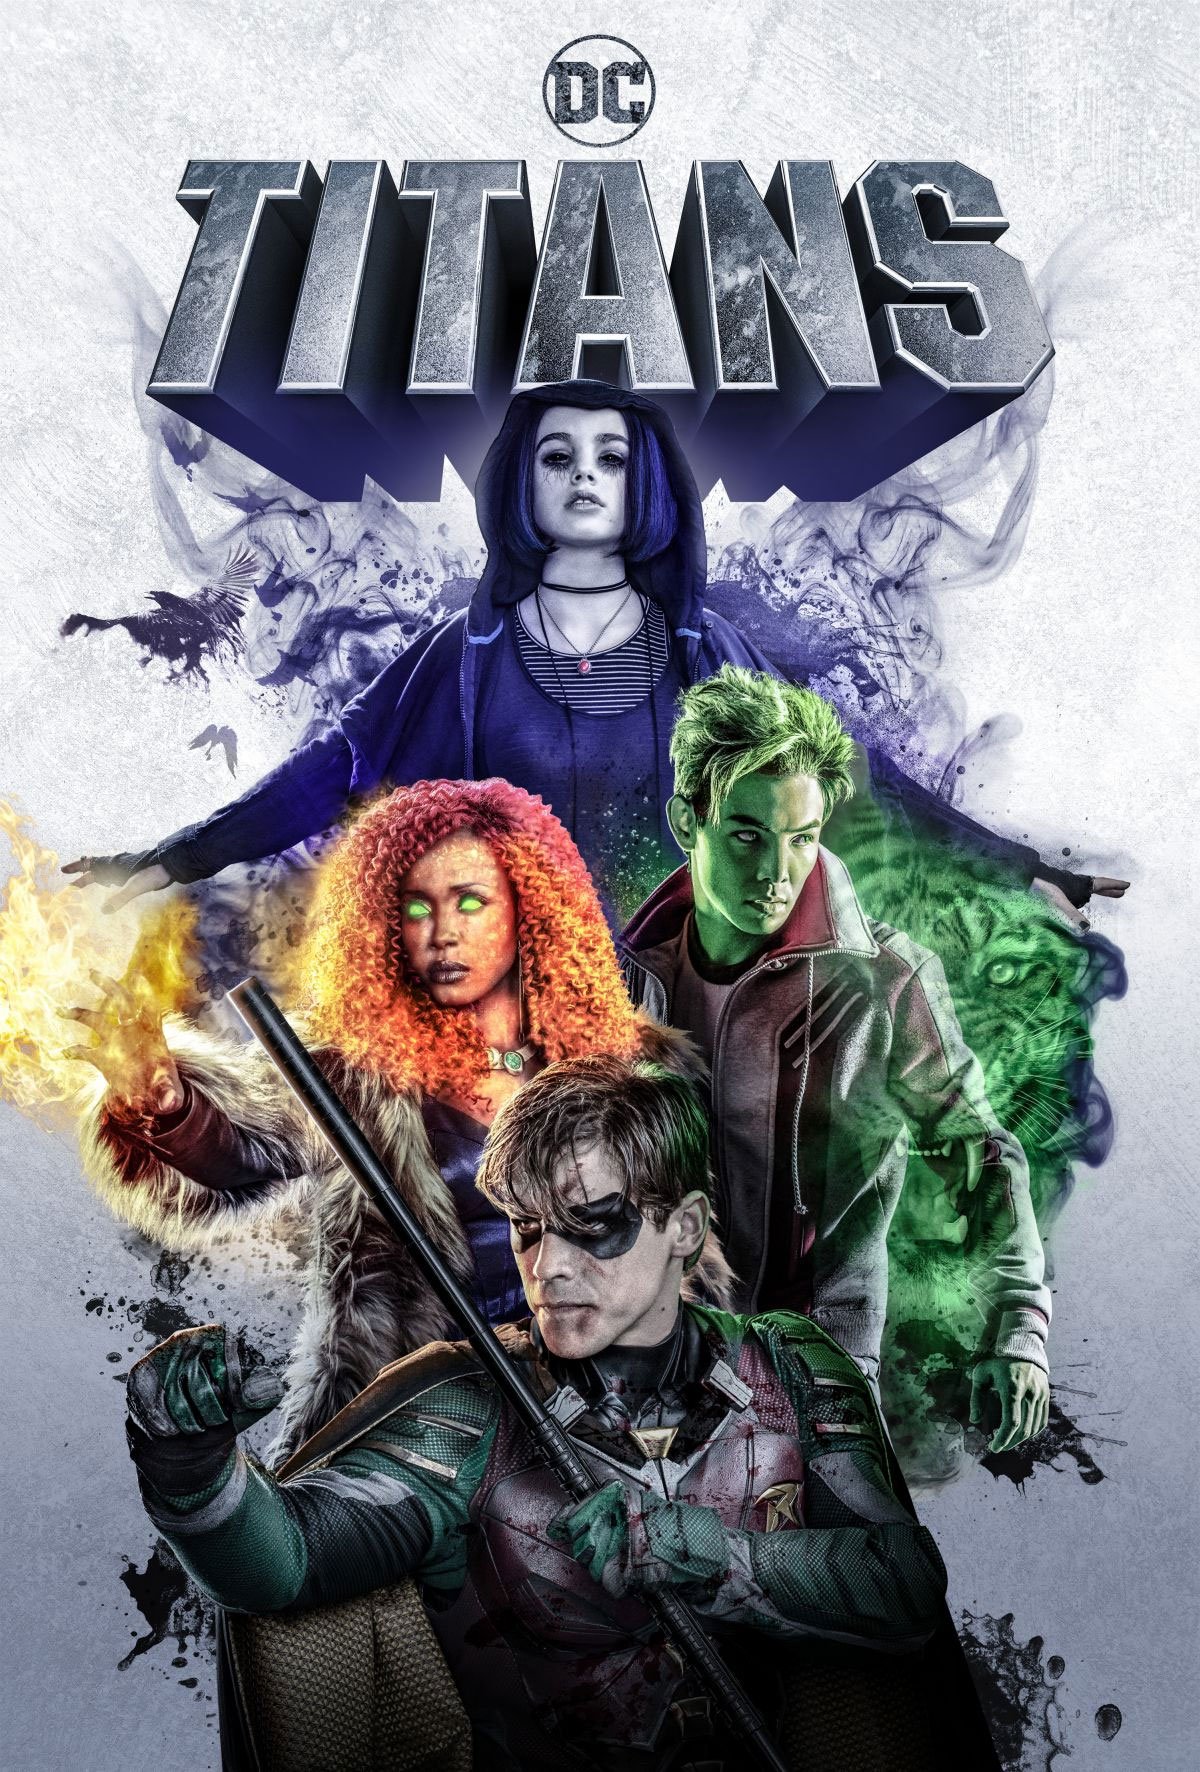 Titans Temporada 4 Parte 1 - Estreno en HBO Max 